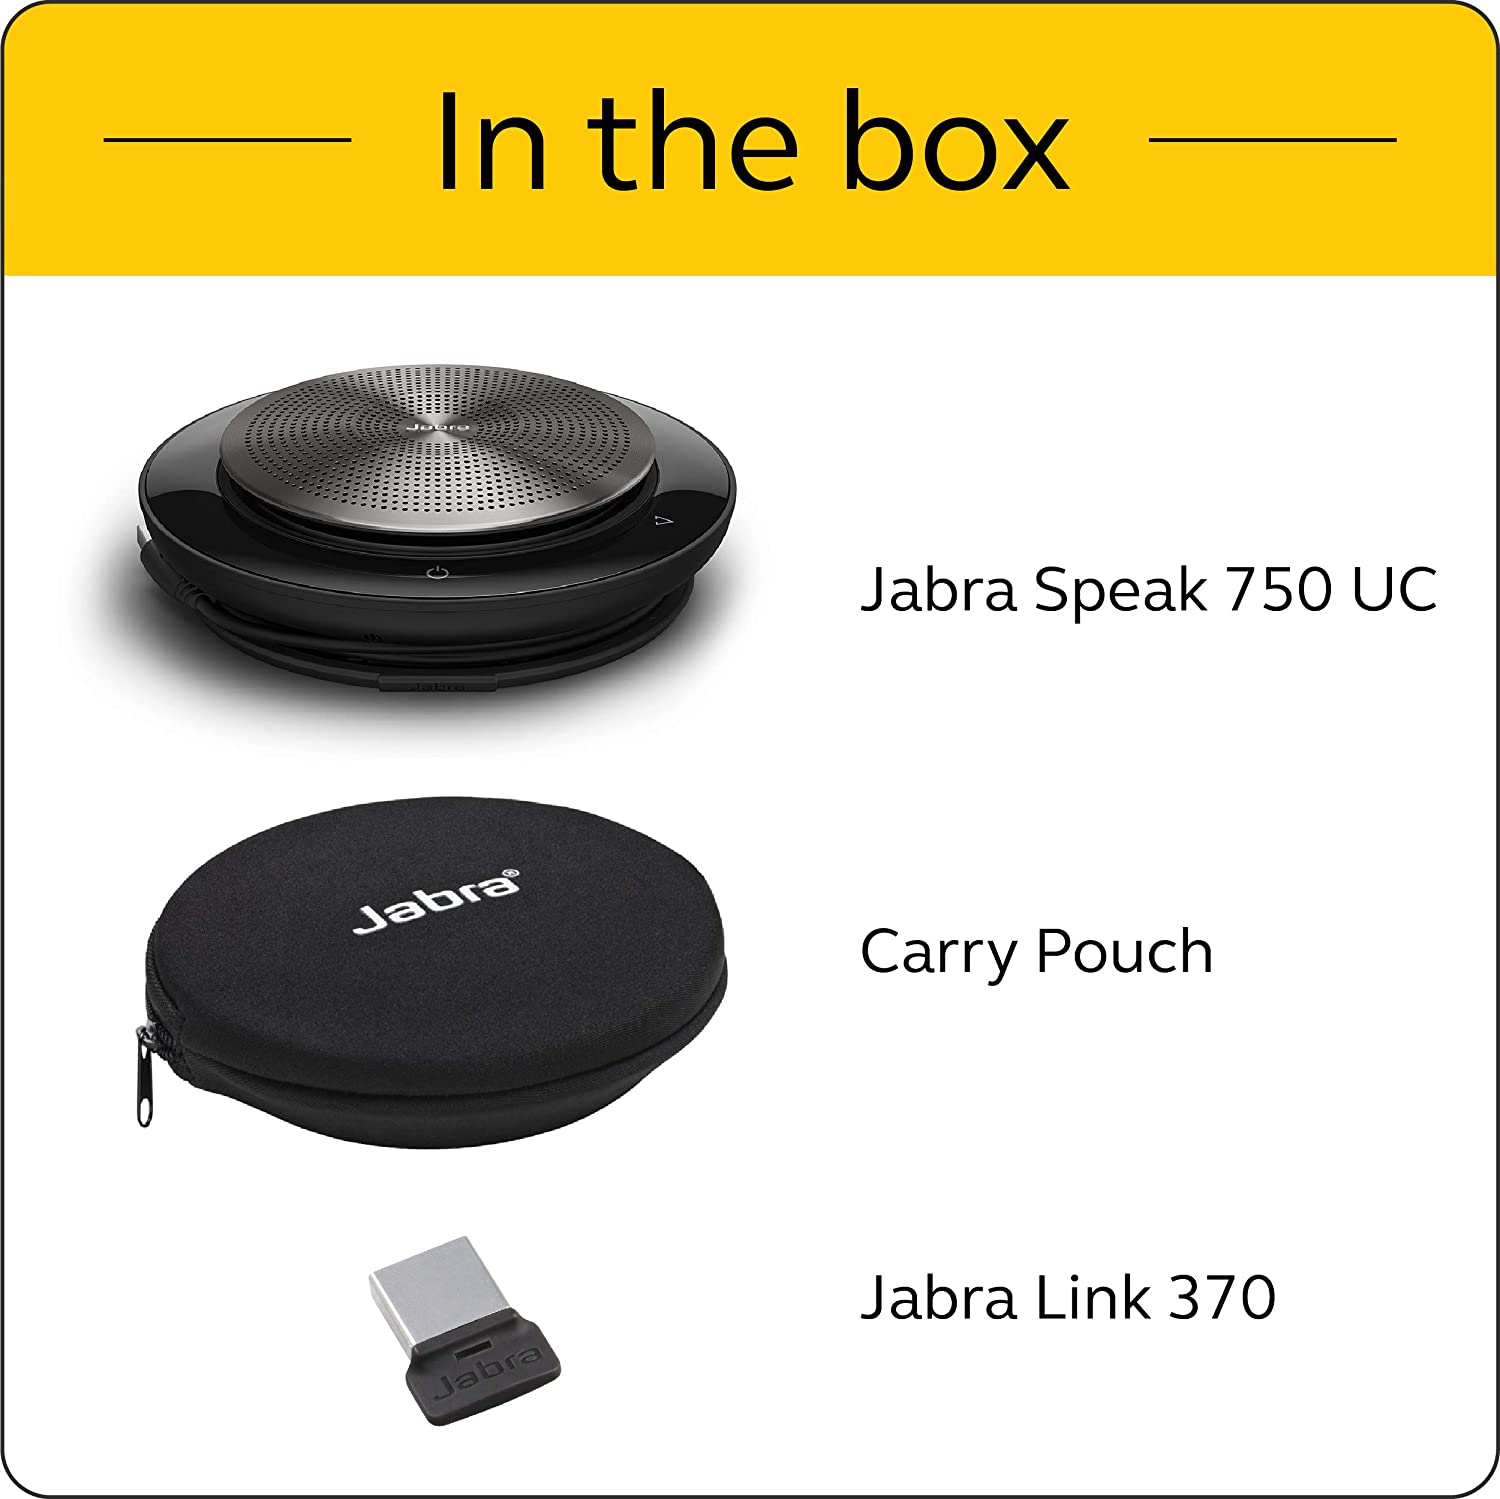 Speak UC Bluetooth Jabra 750 7700-409 + Speakerphone USB Conference